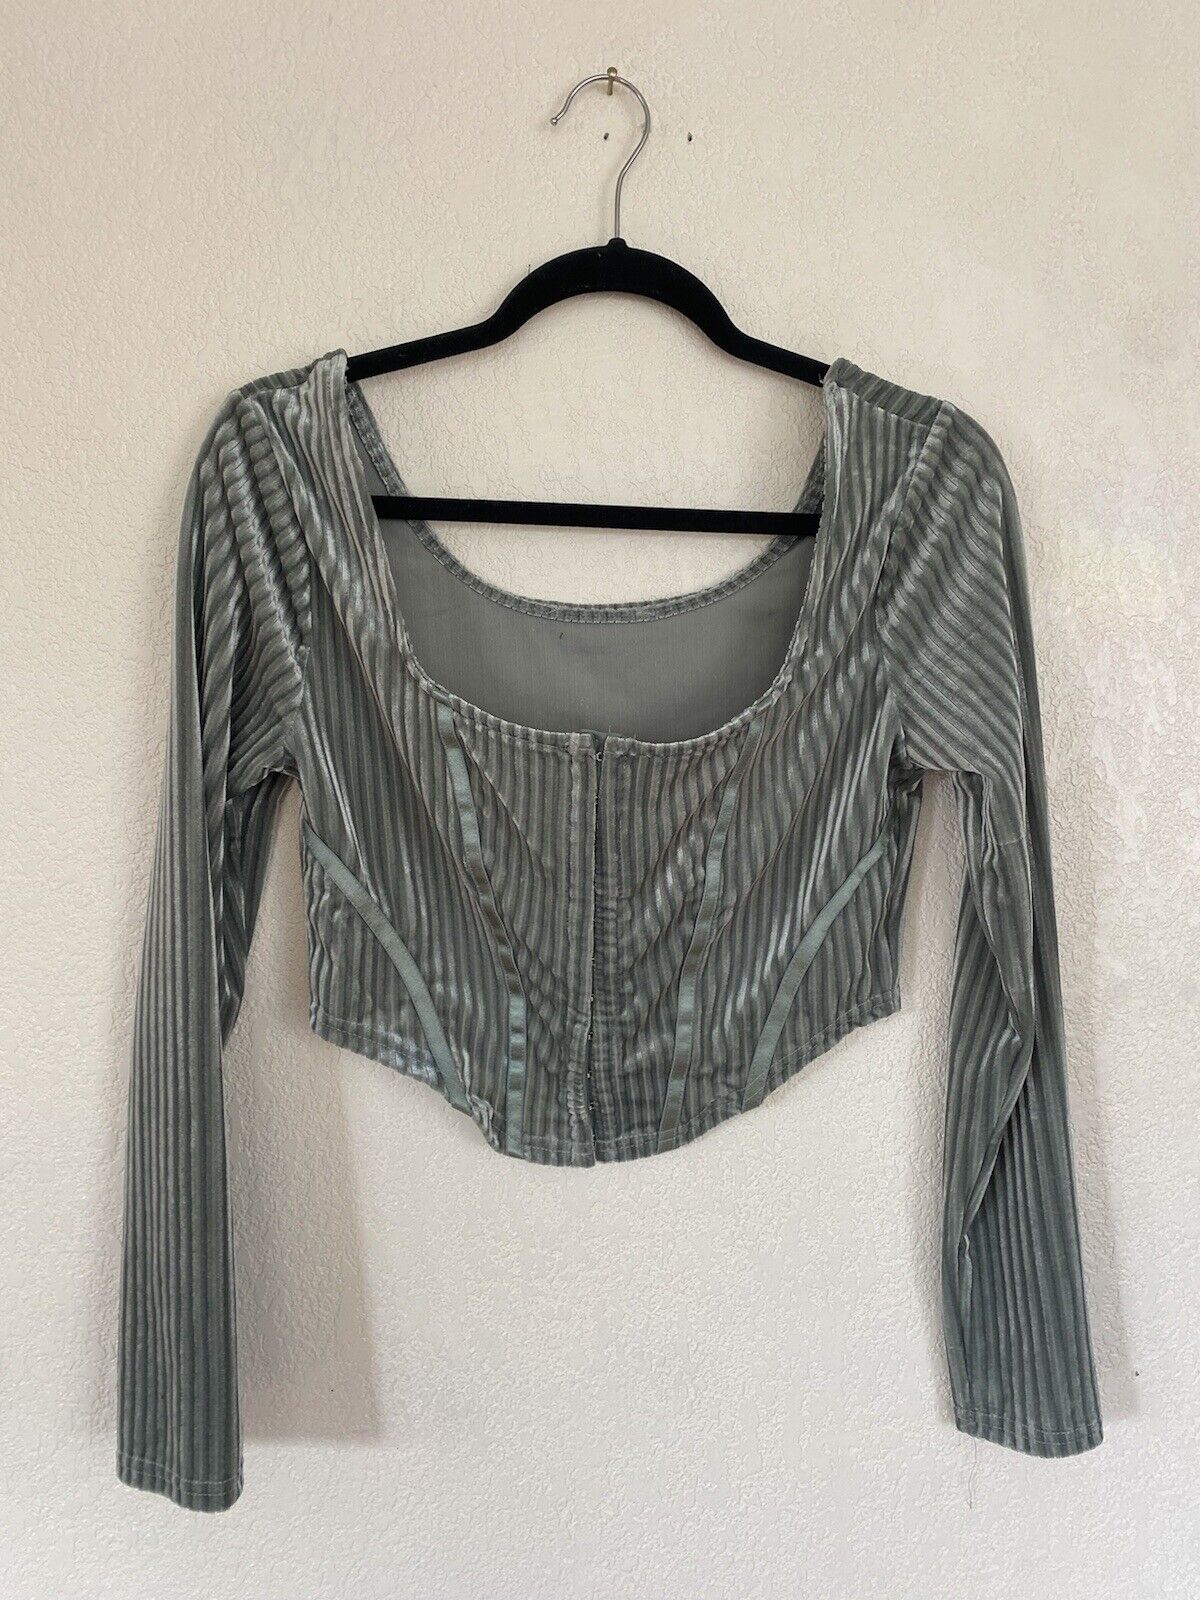 Silver Velvet Long Sleeve Shirt - Unbranded - Women’s Medium # 2640